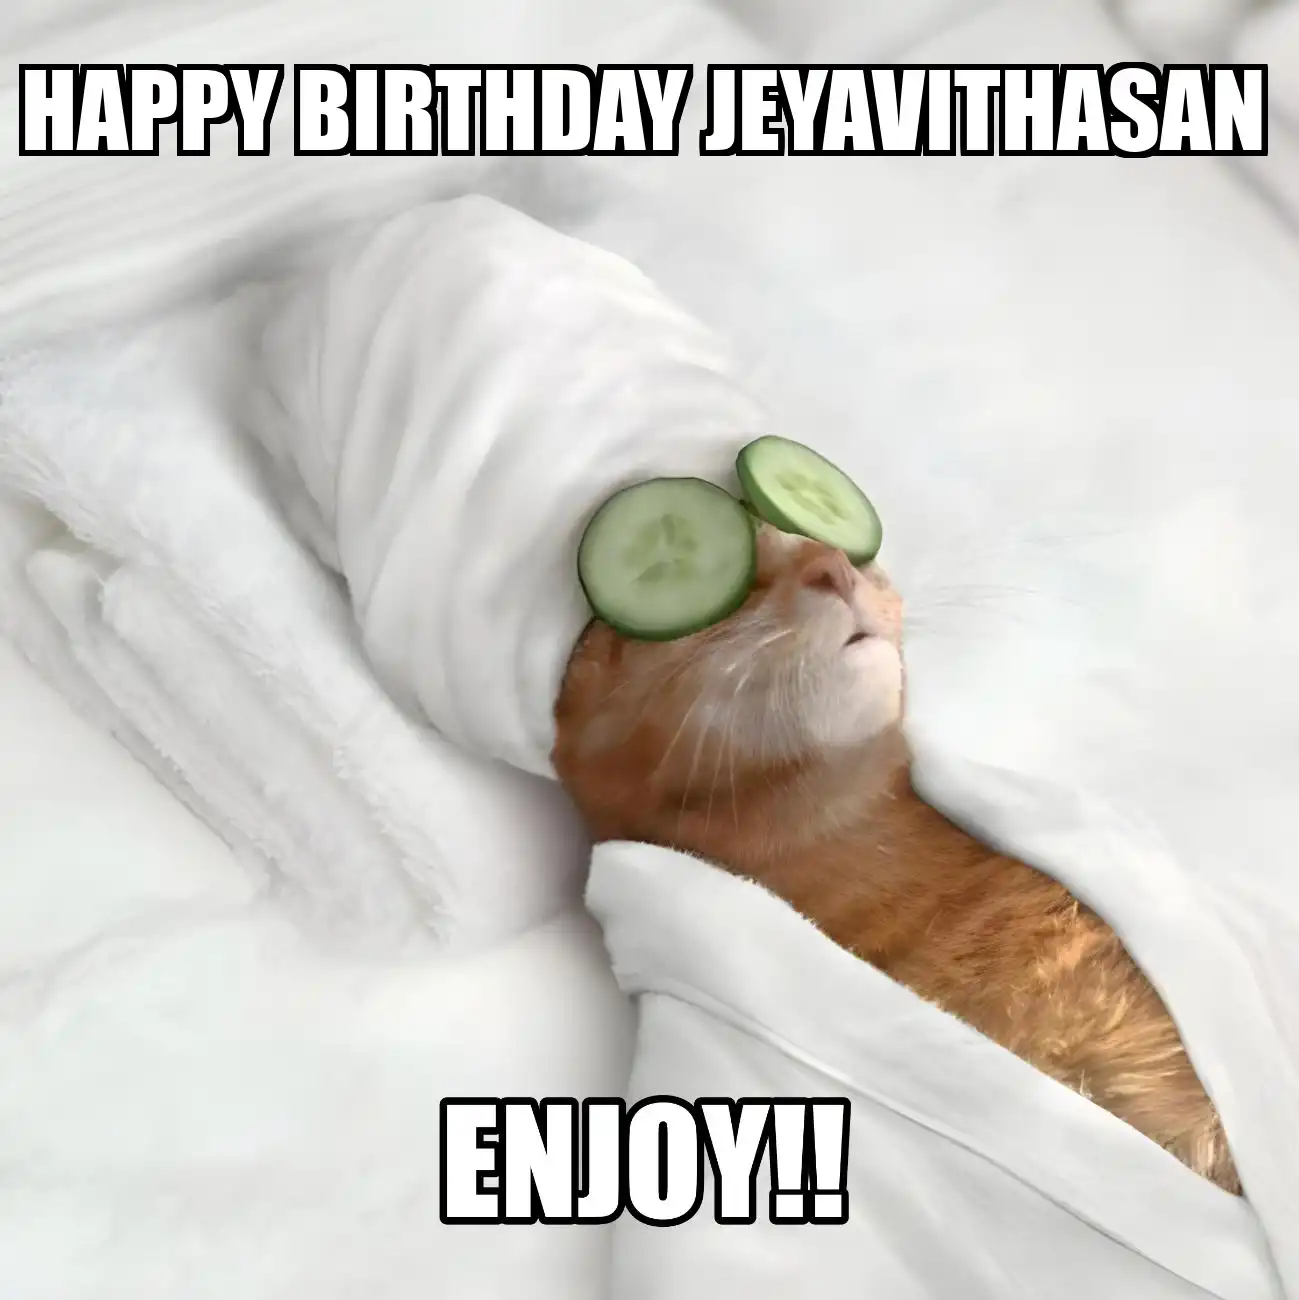 Happy Birthday Jeyavithasan Enjoy Cat Meme